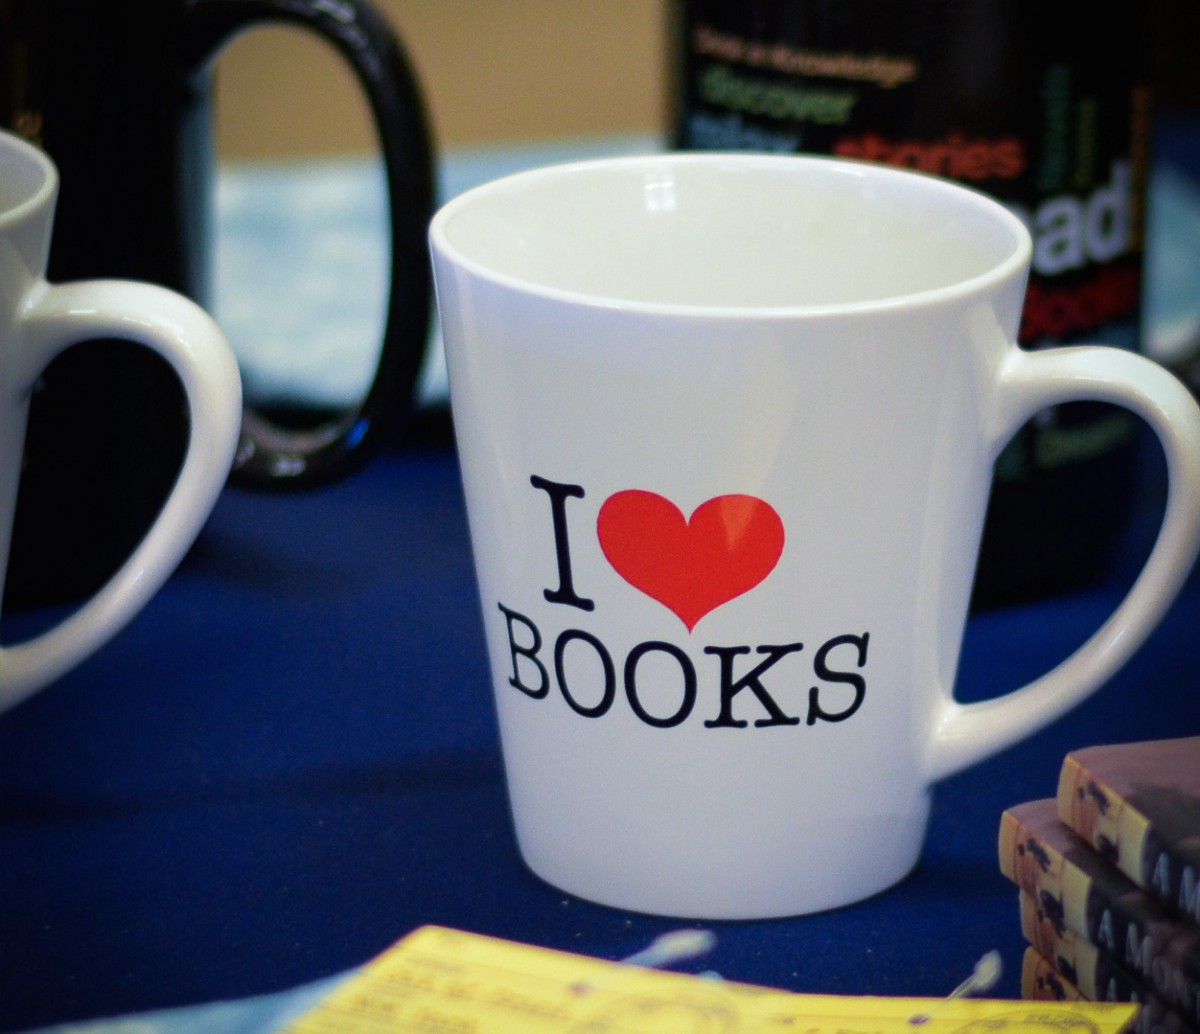 Mug with I heart books logo